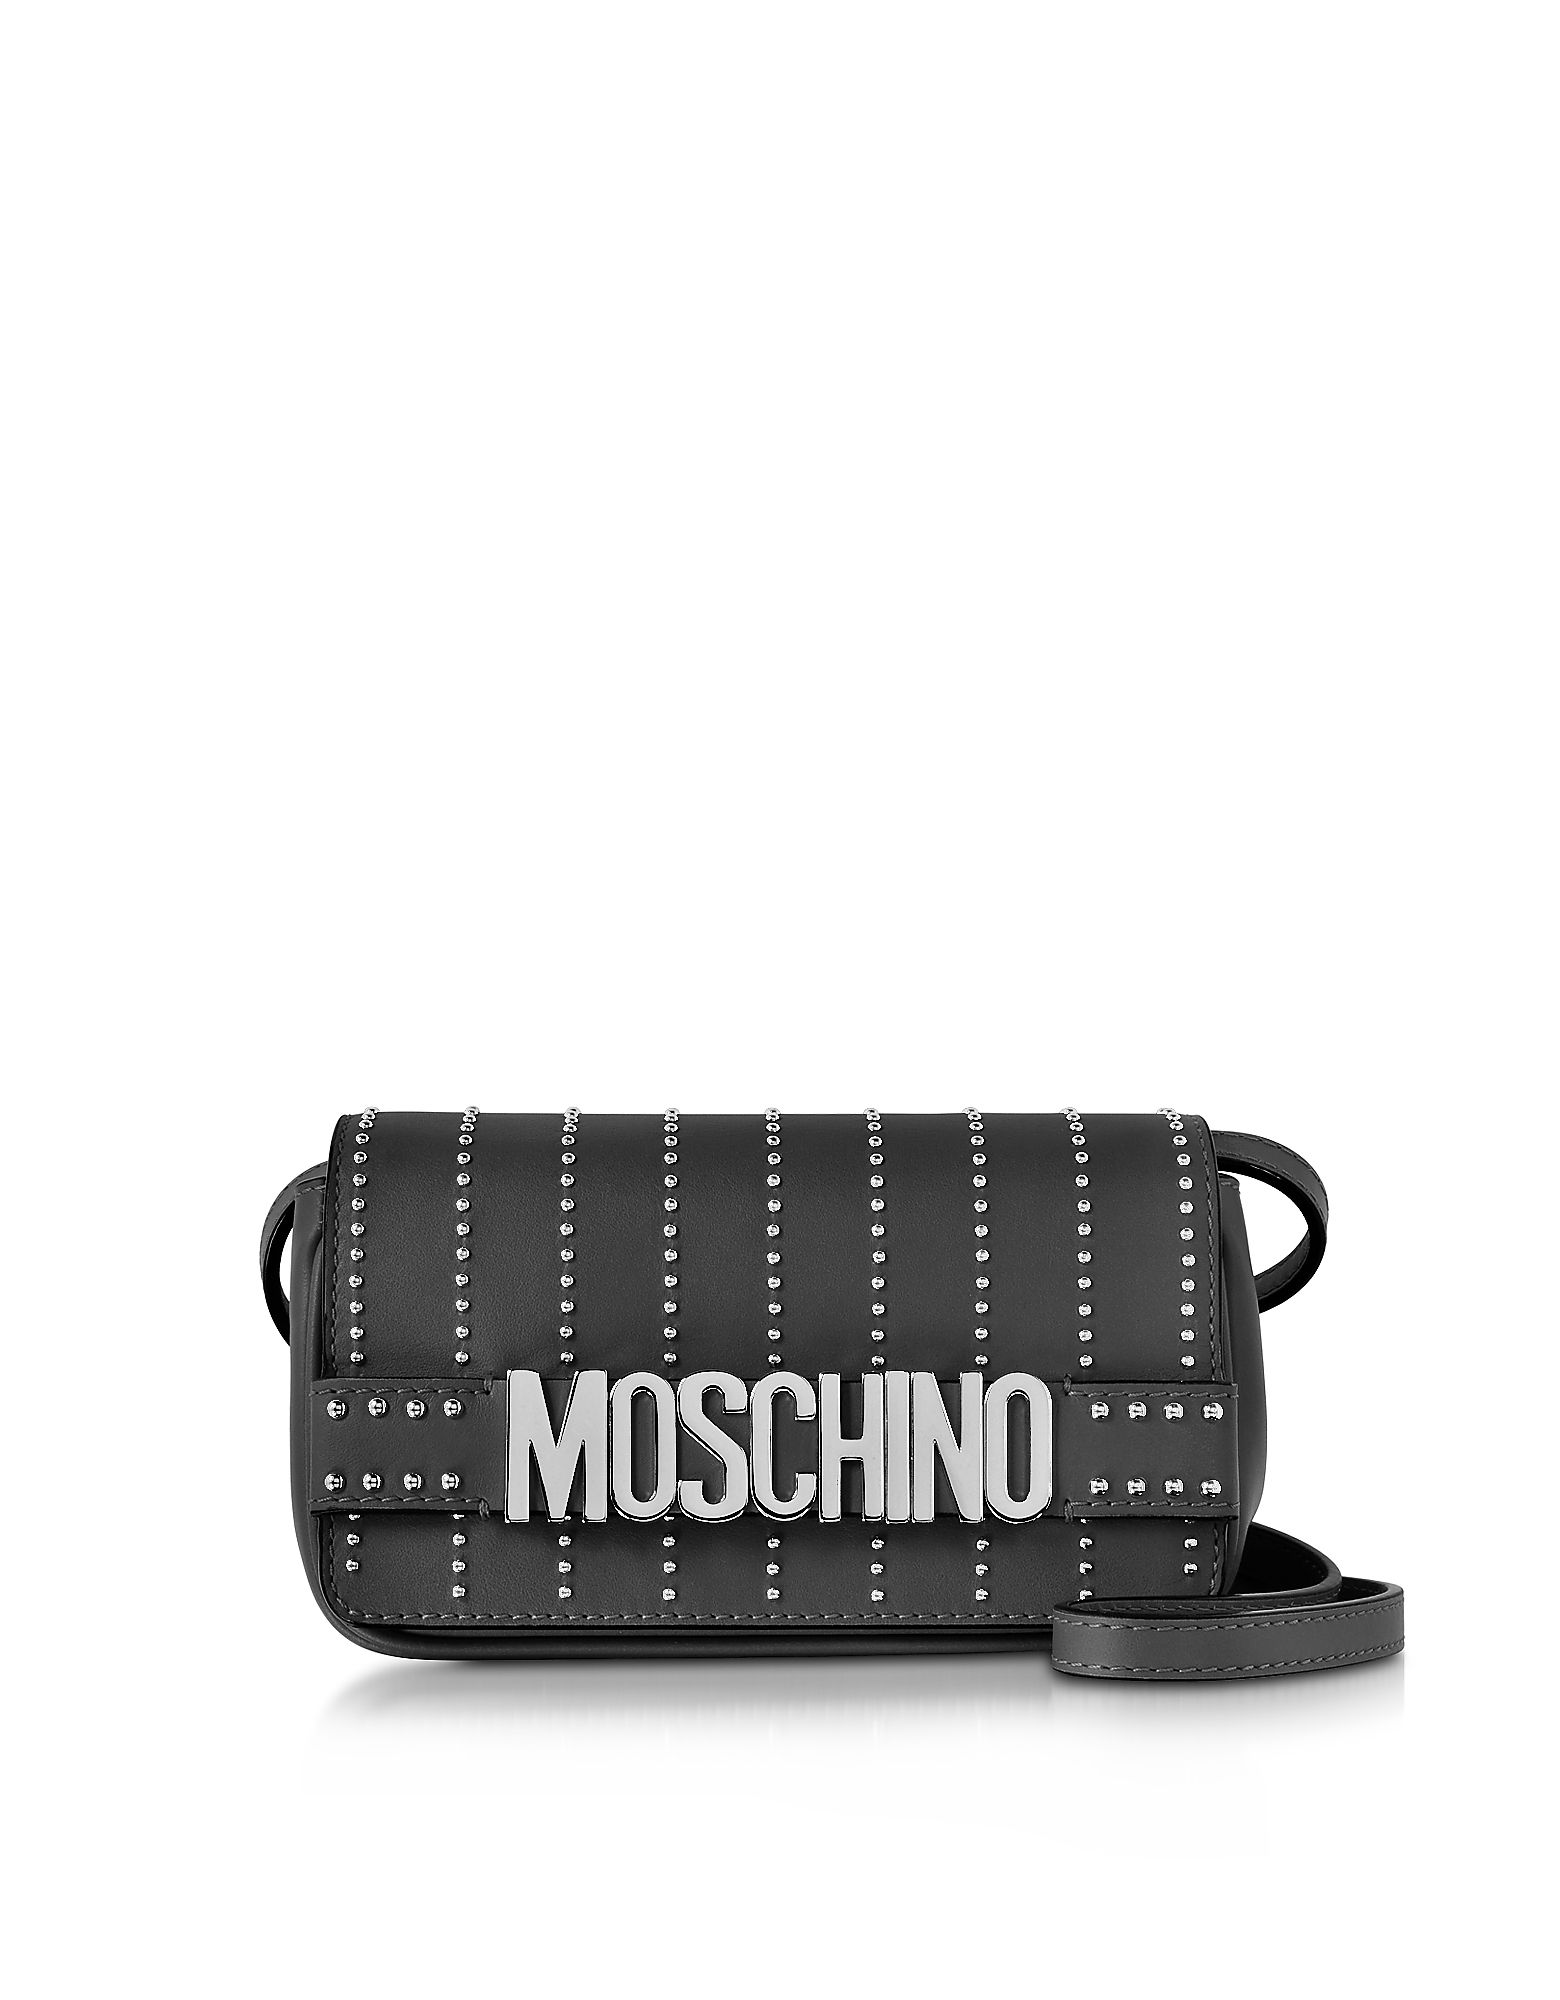 Moschino Black Leather Crossbody Bag w/Studs | Forzieri US & CA